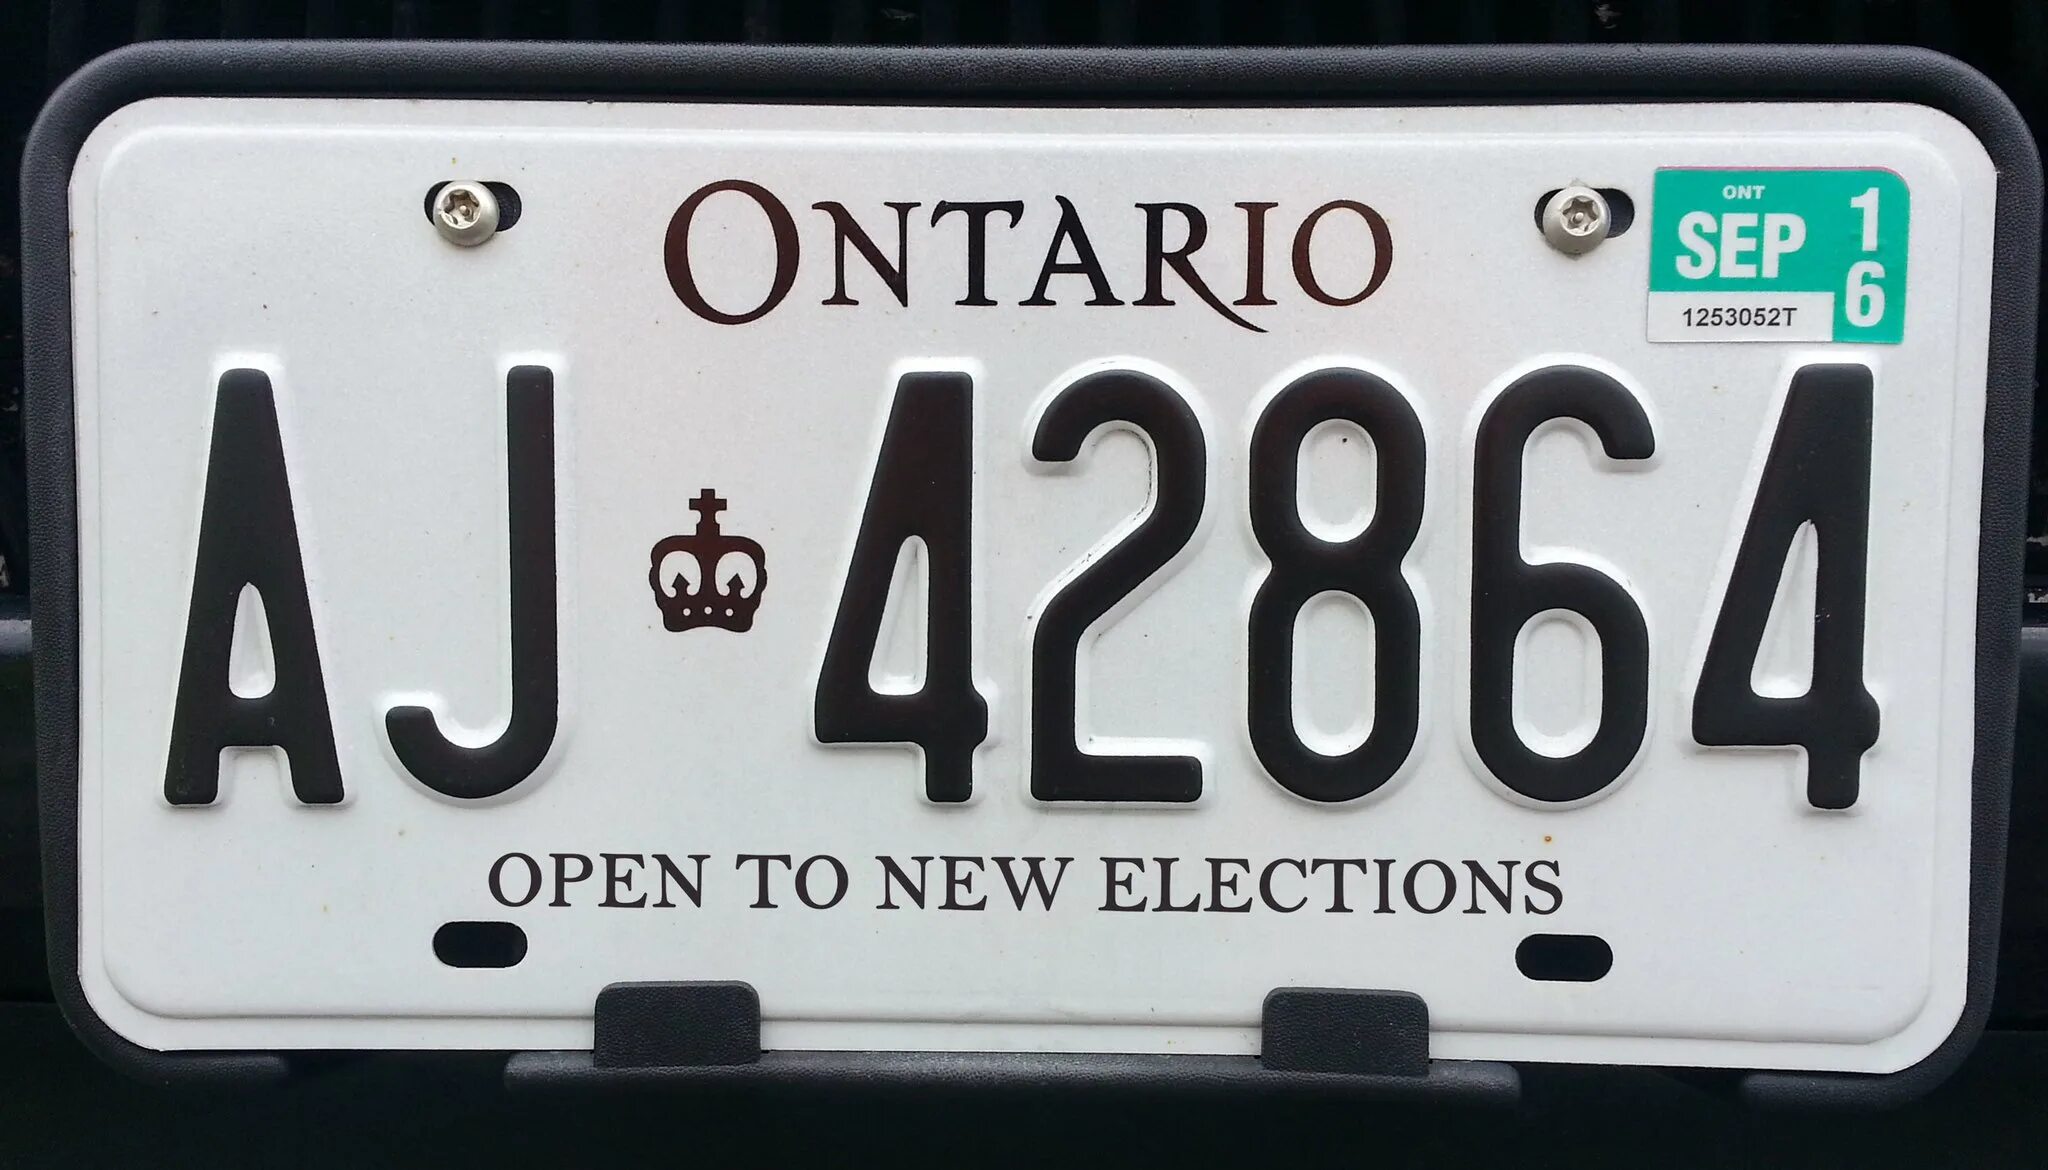 Номерной знак автомобиля. Иностранные номерные знаки автомобильные. Номерные знаки Онтарио. Американские номера. Купить иностранный номер телефона